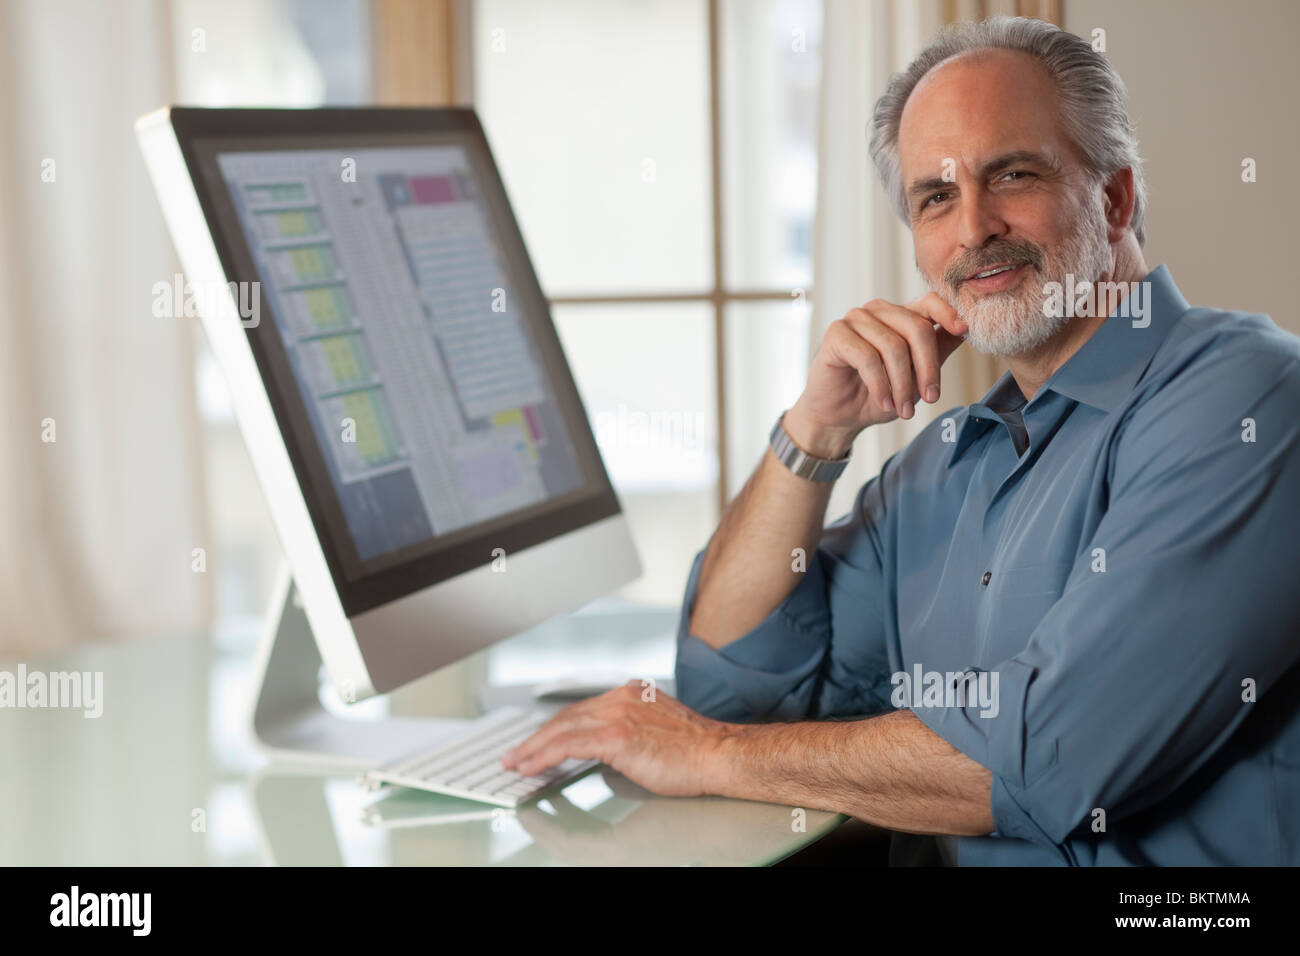 Portrait d'un homme vêtu de vêtements décontractés et assis devant un ordinateur. Il sourit à la caméra. Banque D'Images